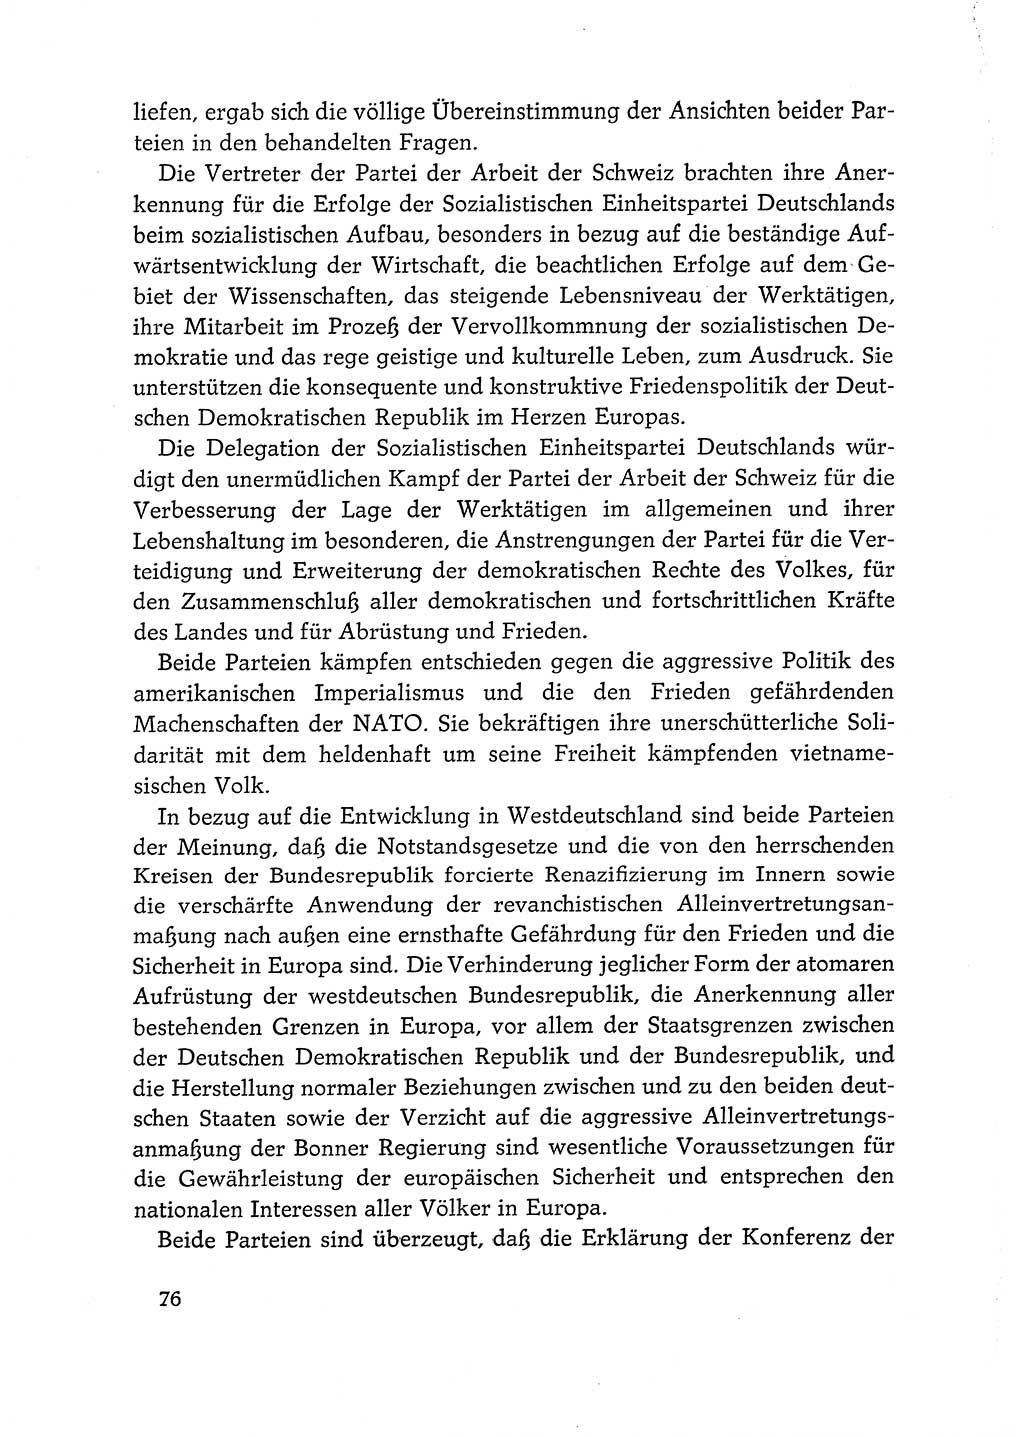 Dokumente der Sozialistischen Einheitspartei Deutschlands (SED) [Deutsche Demokratische Republik (DDR)] 1968-1969, Seite 76 (Dok. SED DDR 1968-1969, S. 76)